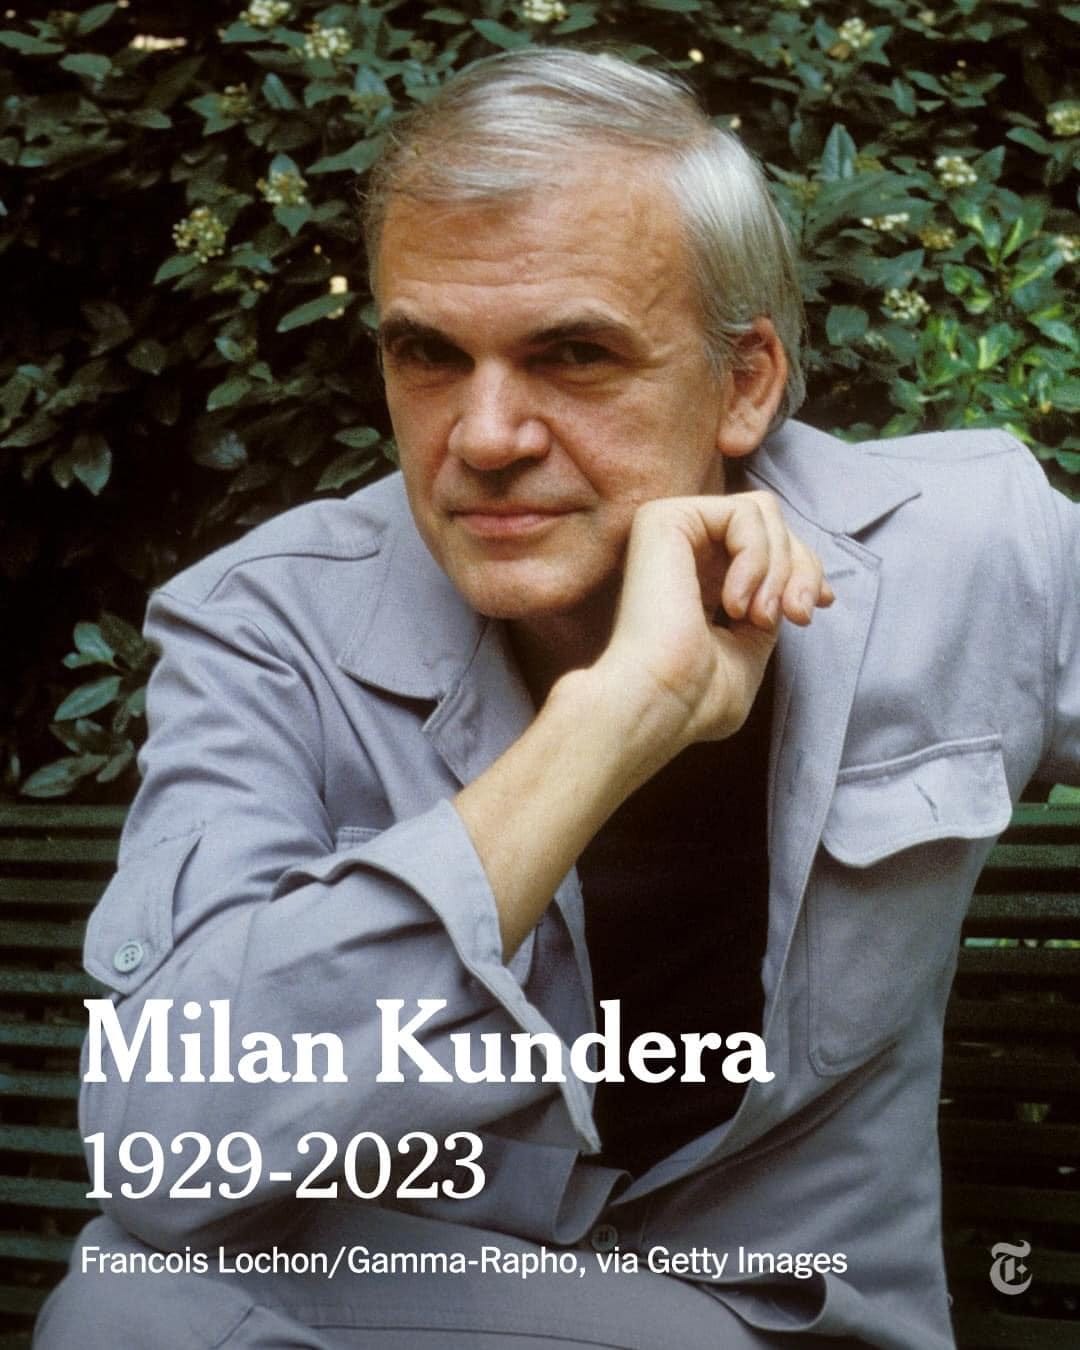 Ar putea fi o imagine cu 1 persoană şi text care spune „Milan Kundera 1929-2023 Francois Lochon/Gamma-Rapho, via Getty Images”